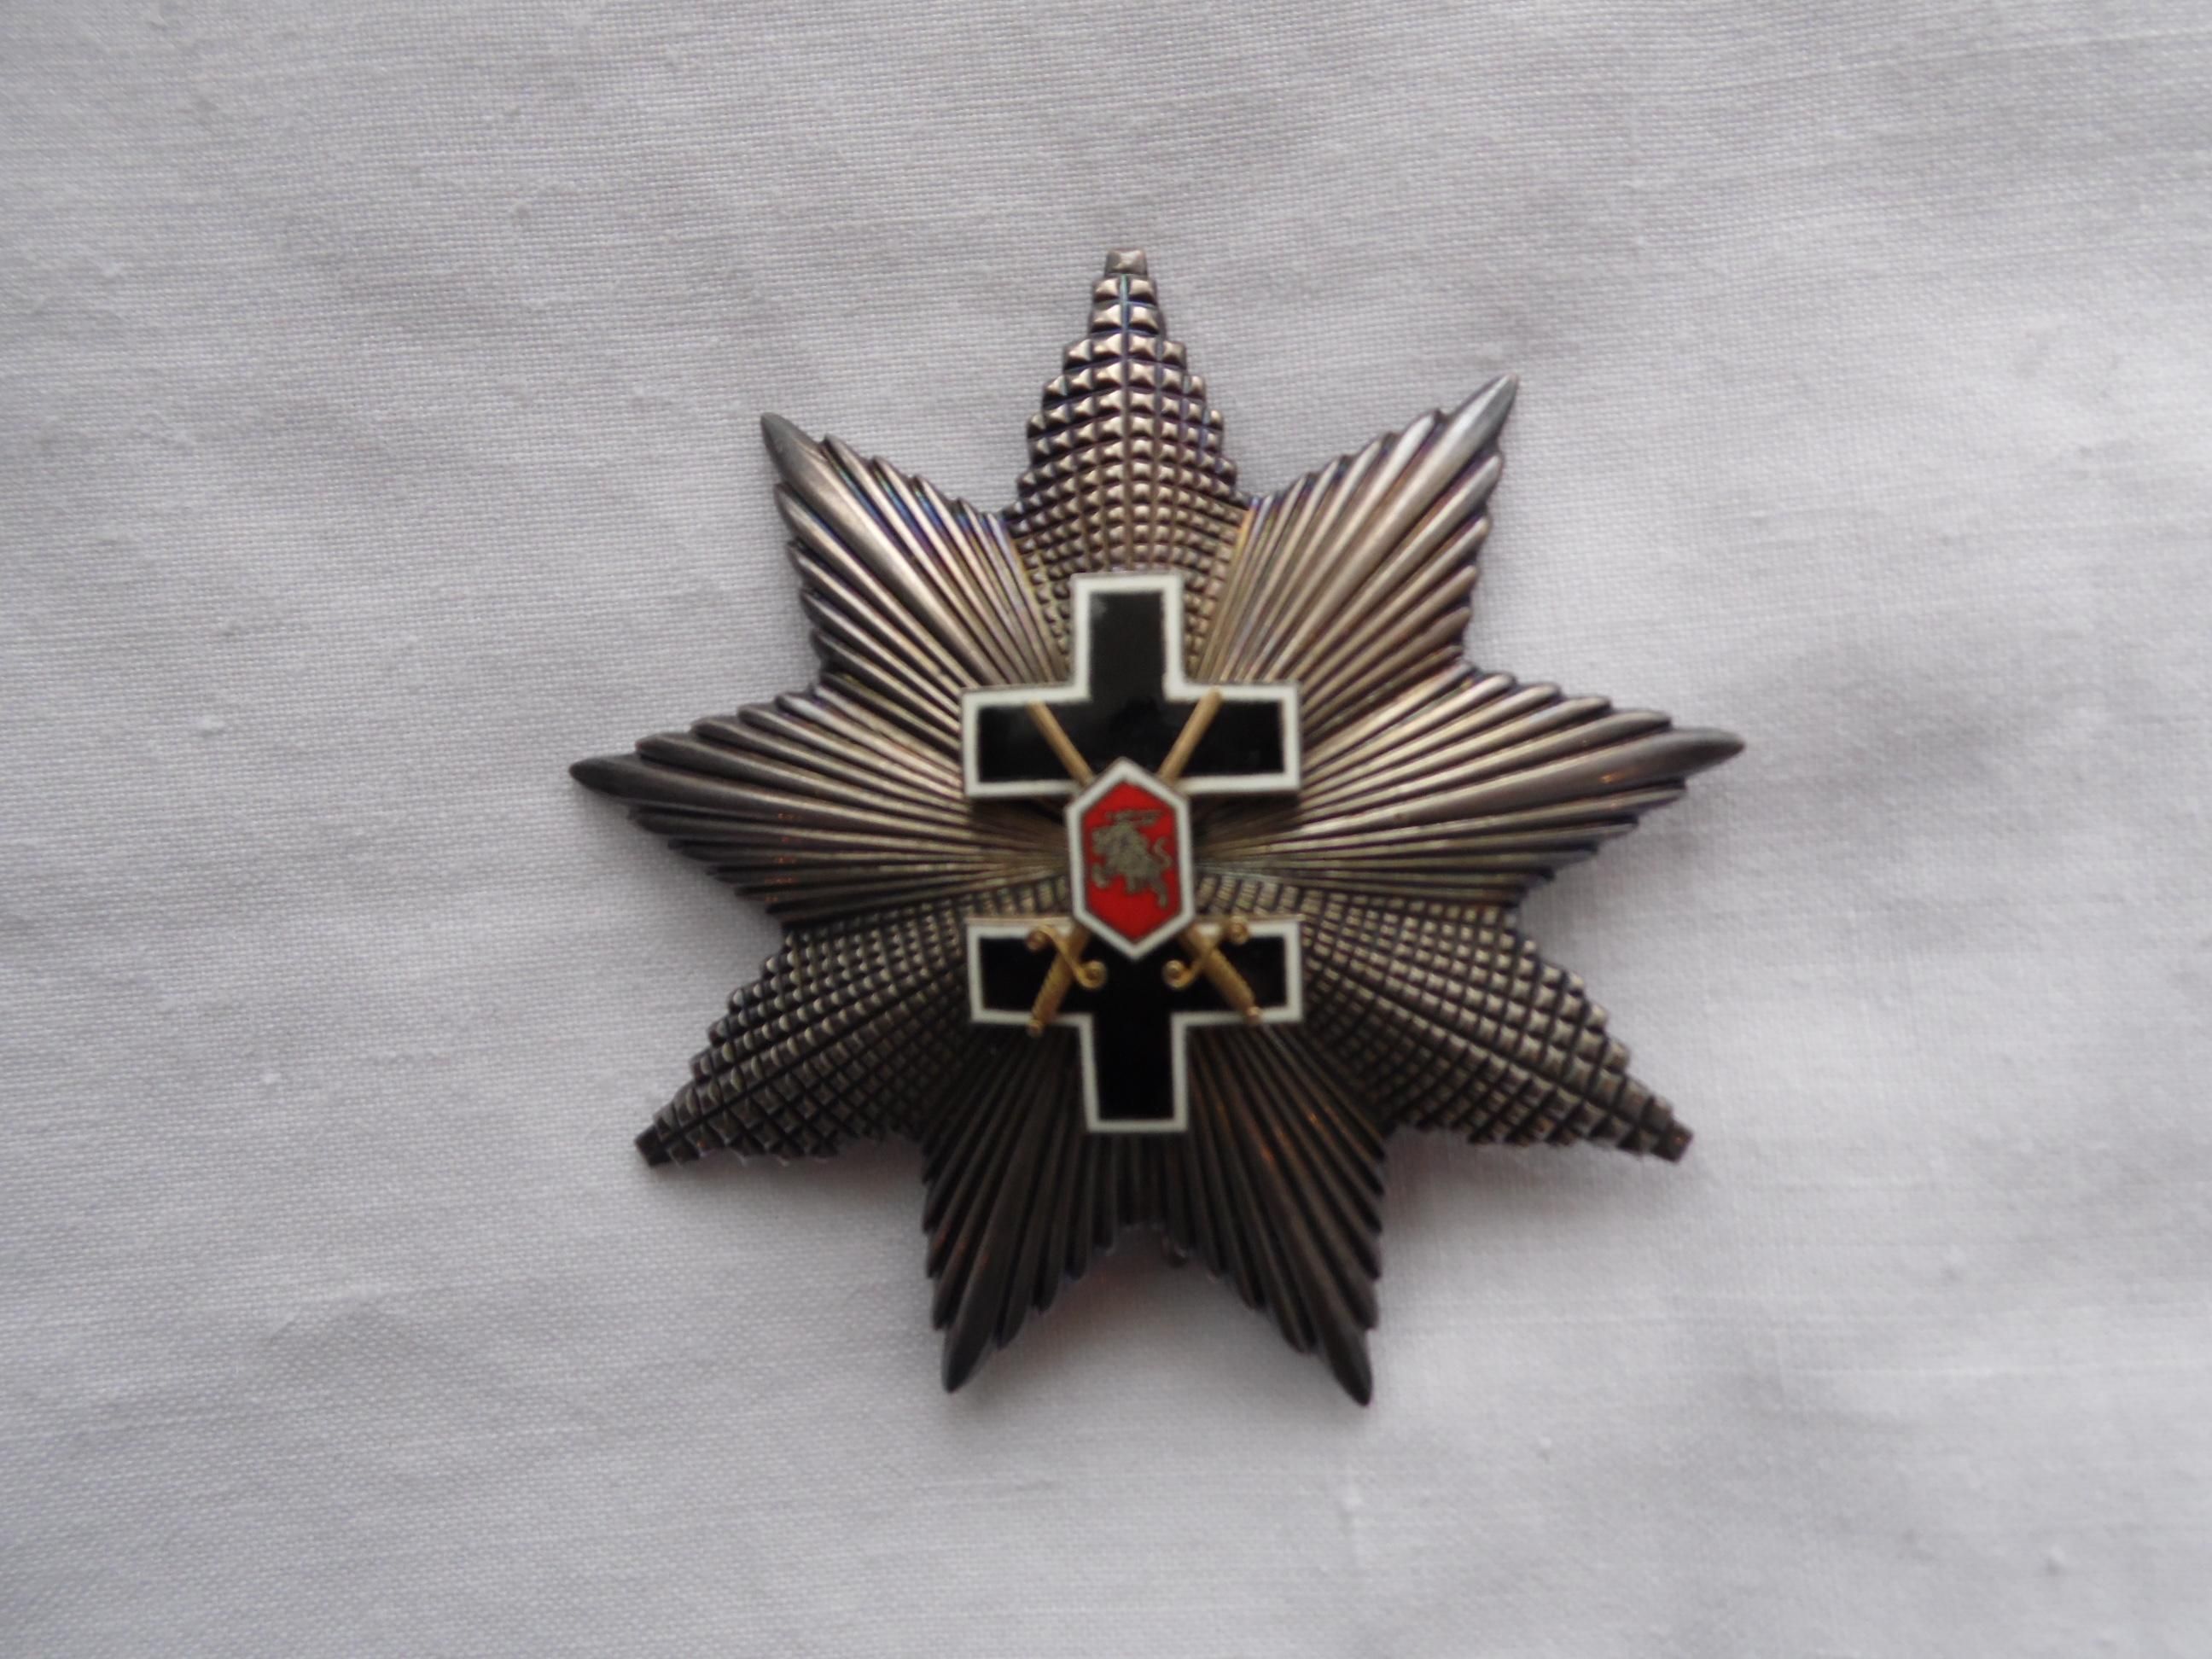 Девяти конечная звезда ордена Креста Витиса степени, изготавливалась из серебра. Из коллекции Г. Сакалаускаса